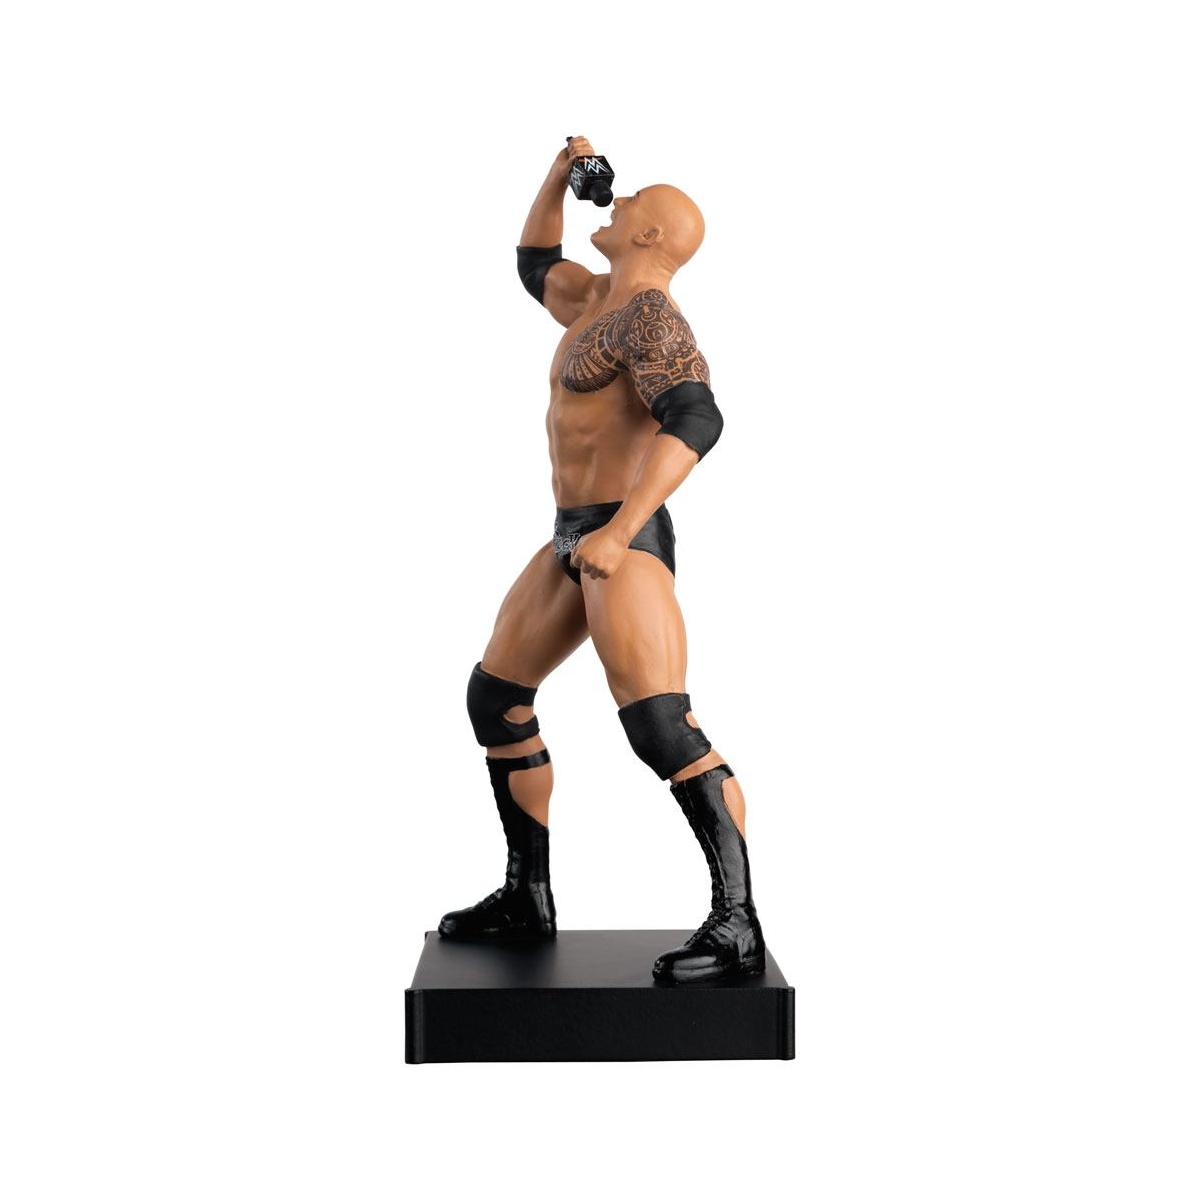 WWE - Figurine de The Rock au 1:16